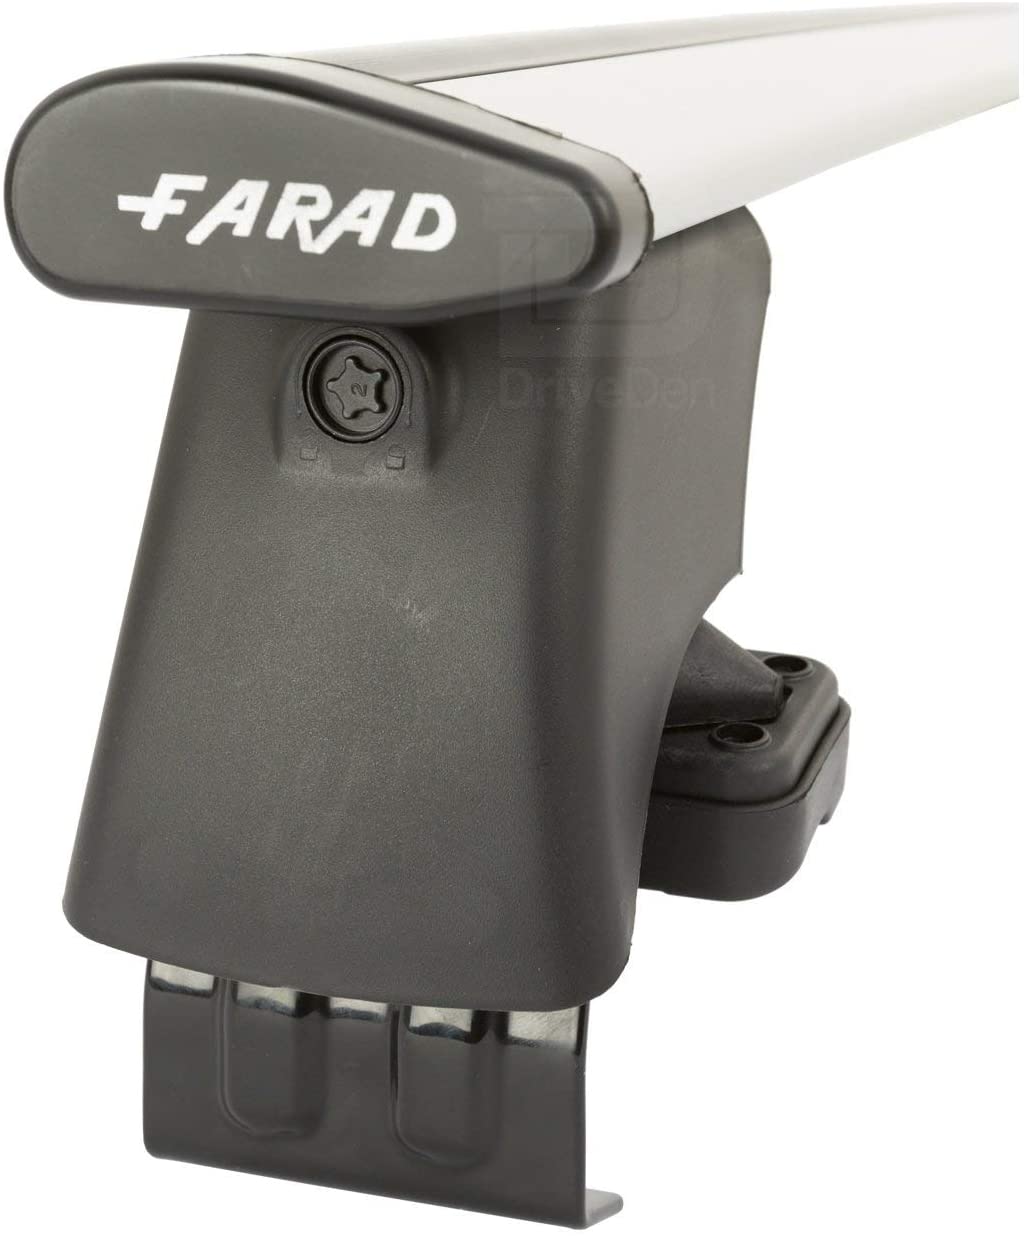 FARAD-Kit H2 per barre portatutto - Chevrolet Aveo 2006-2011 (senza corrimano)